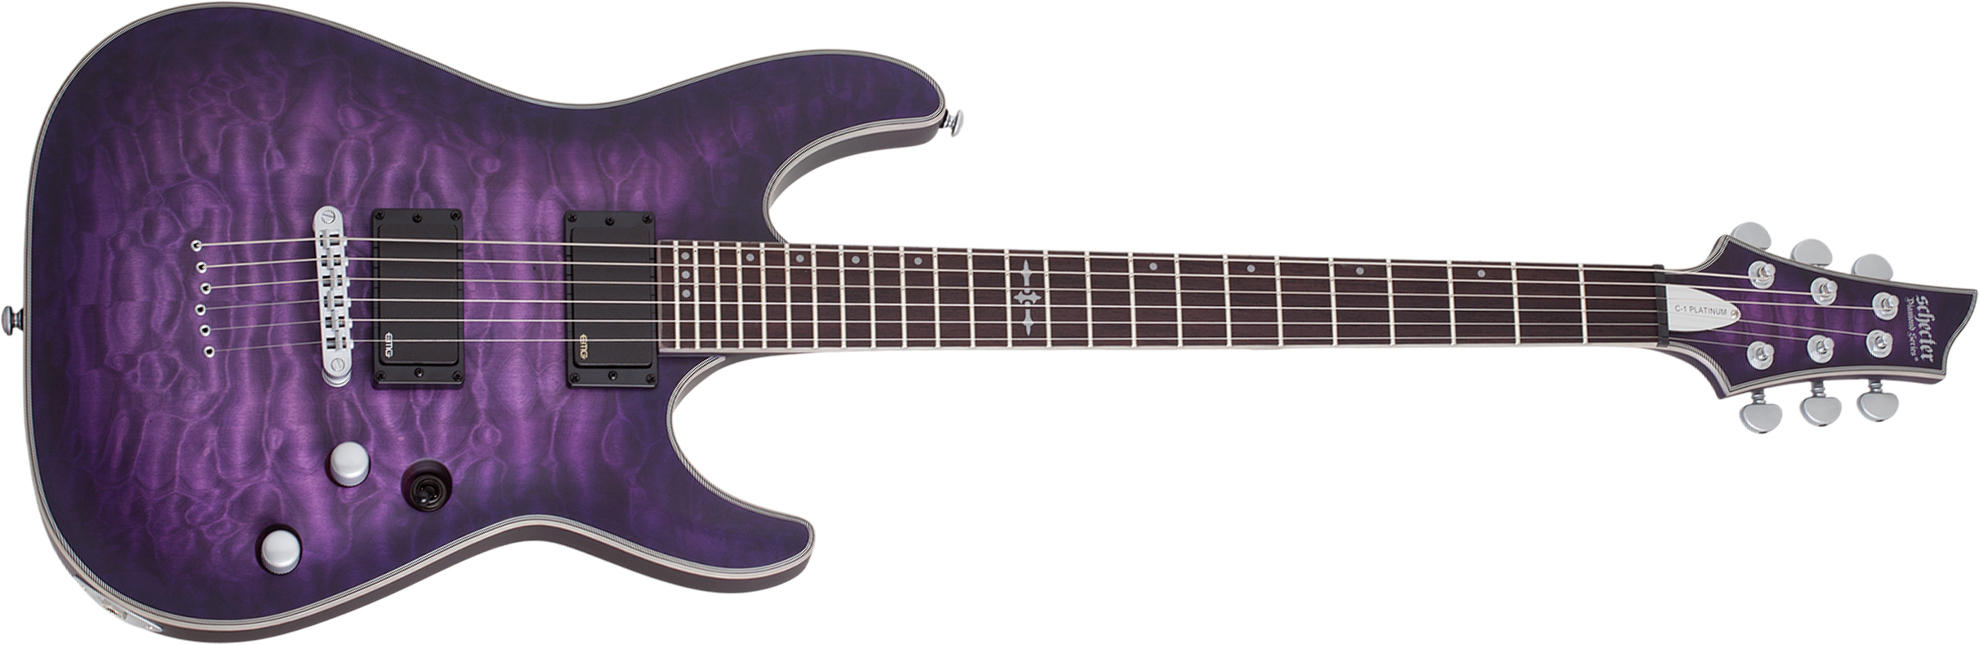 Schecter C-1 Platinum 2h Emg Ht Eb - Satin Purple Burst - Elektrische gitaar in Str-vorm - Main picture